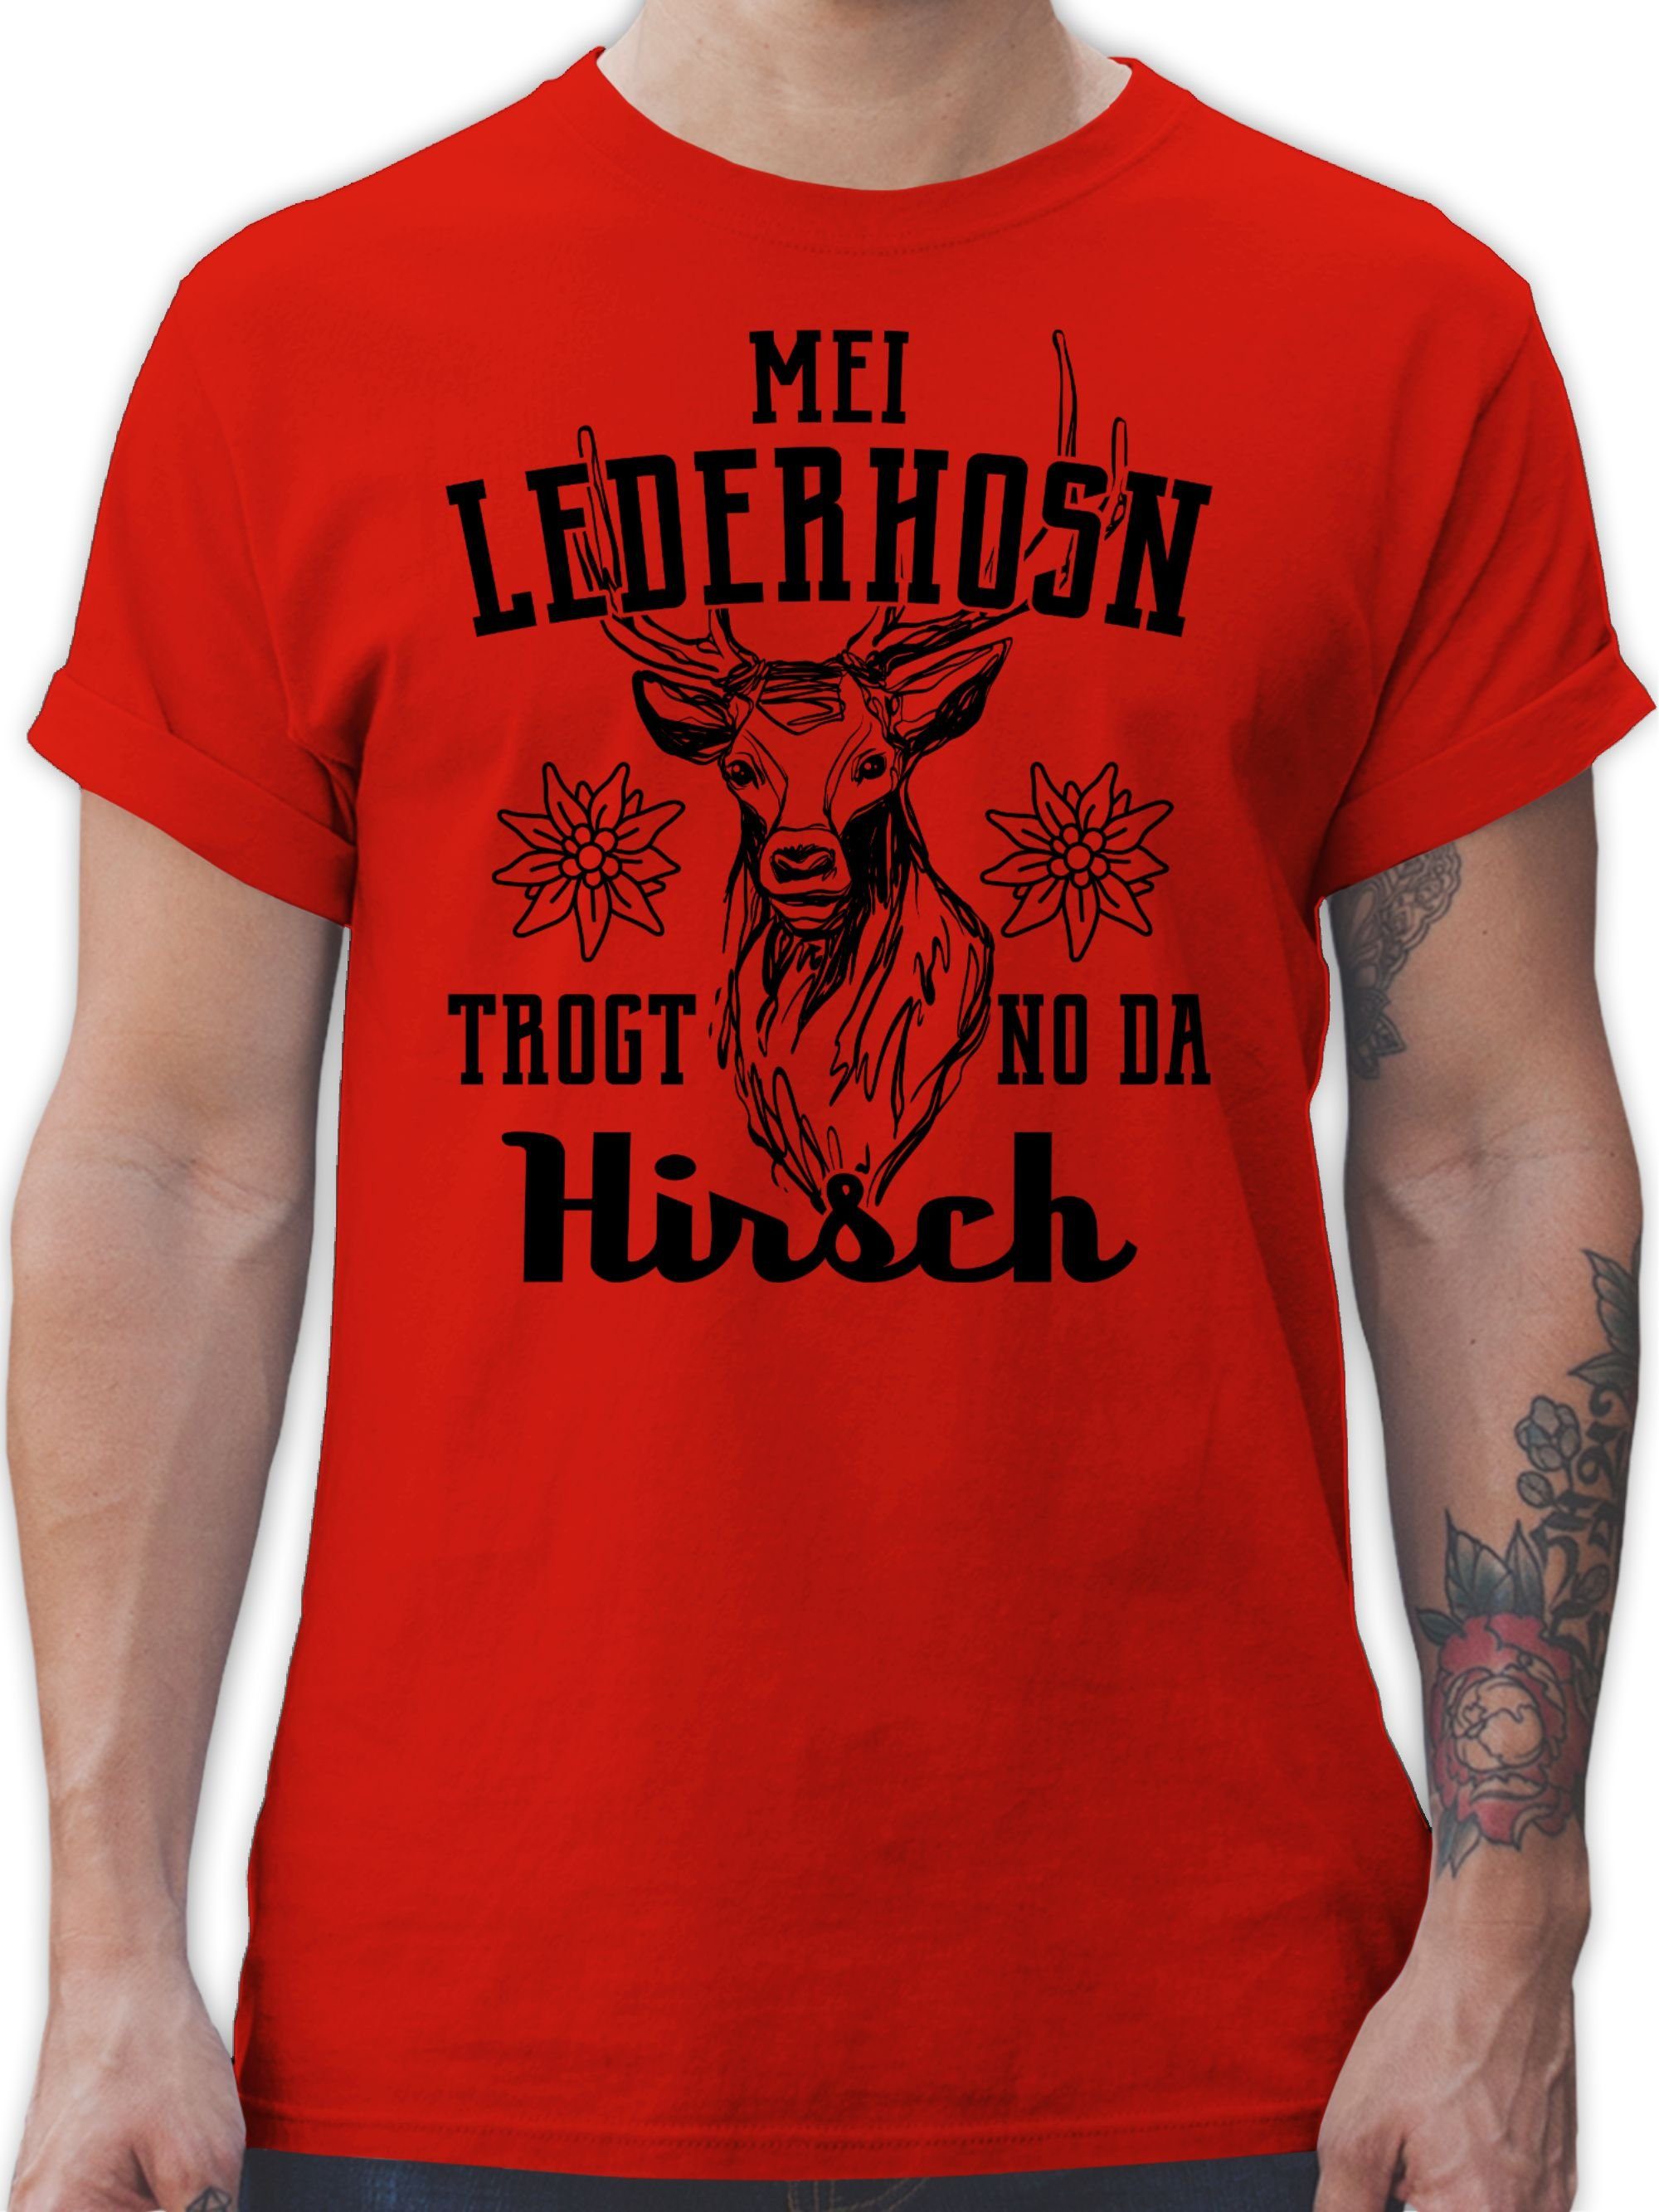 Shirtracer T-Shirt Mei Lederhosn trogt no 3 schwarz Herren Mode für Hirsch da - Oktoberfest Rot